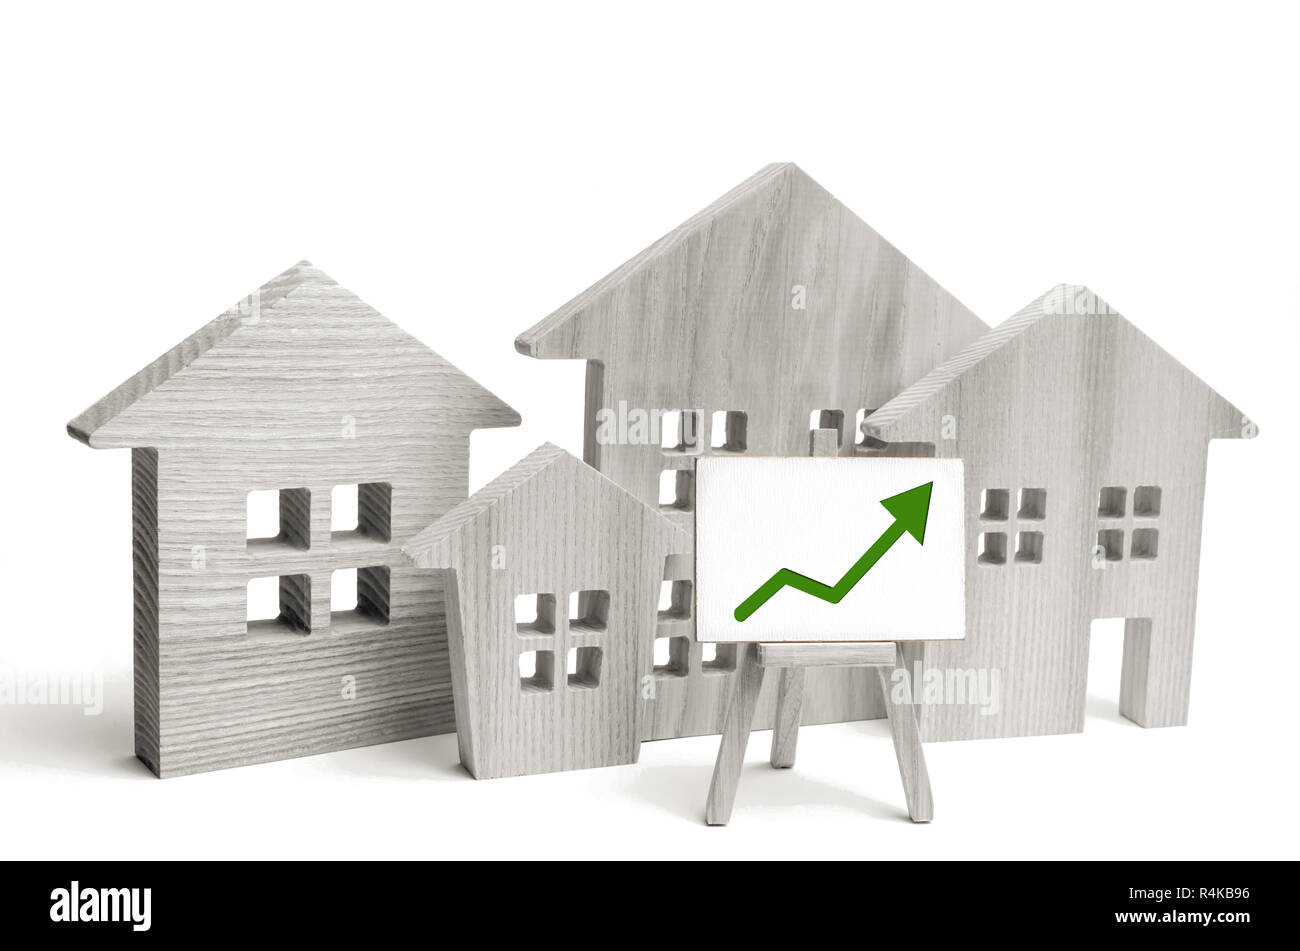 Maisons en bois avec une flèche verte. concept de forte demande pour l'immobilier. accroître l'efficacité énergétique du logement. hausse des prix de l'immobilier. propriété. po Banque D'Images